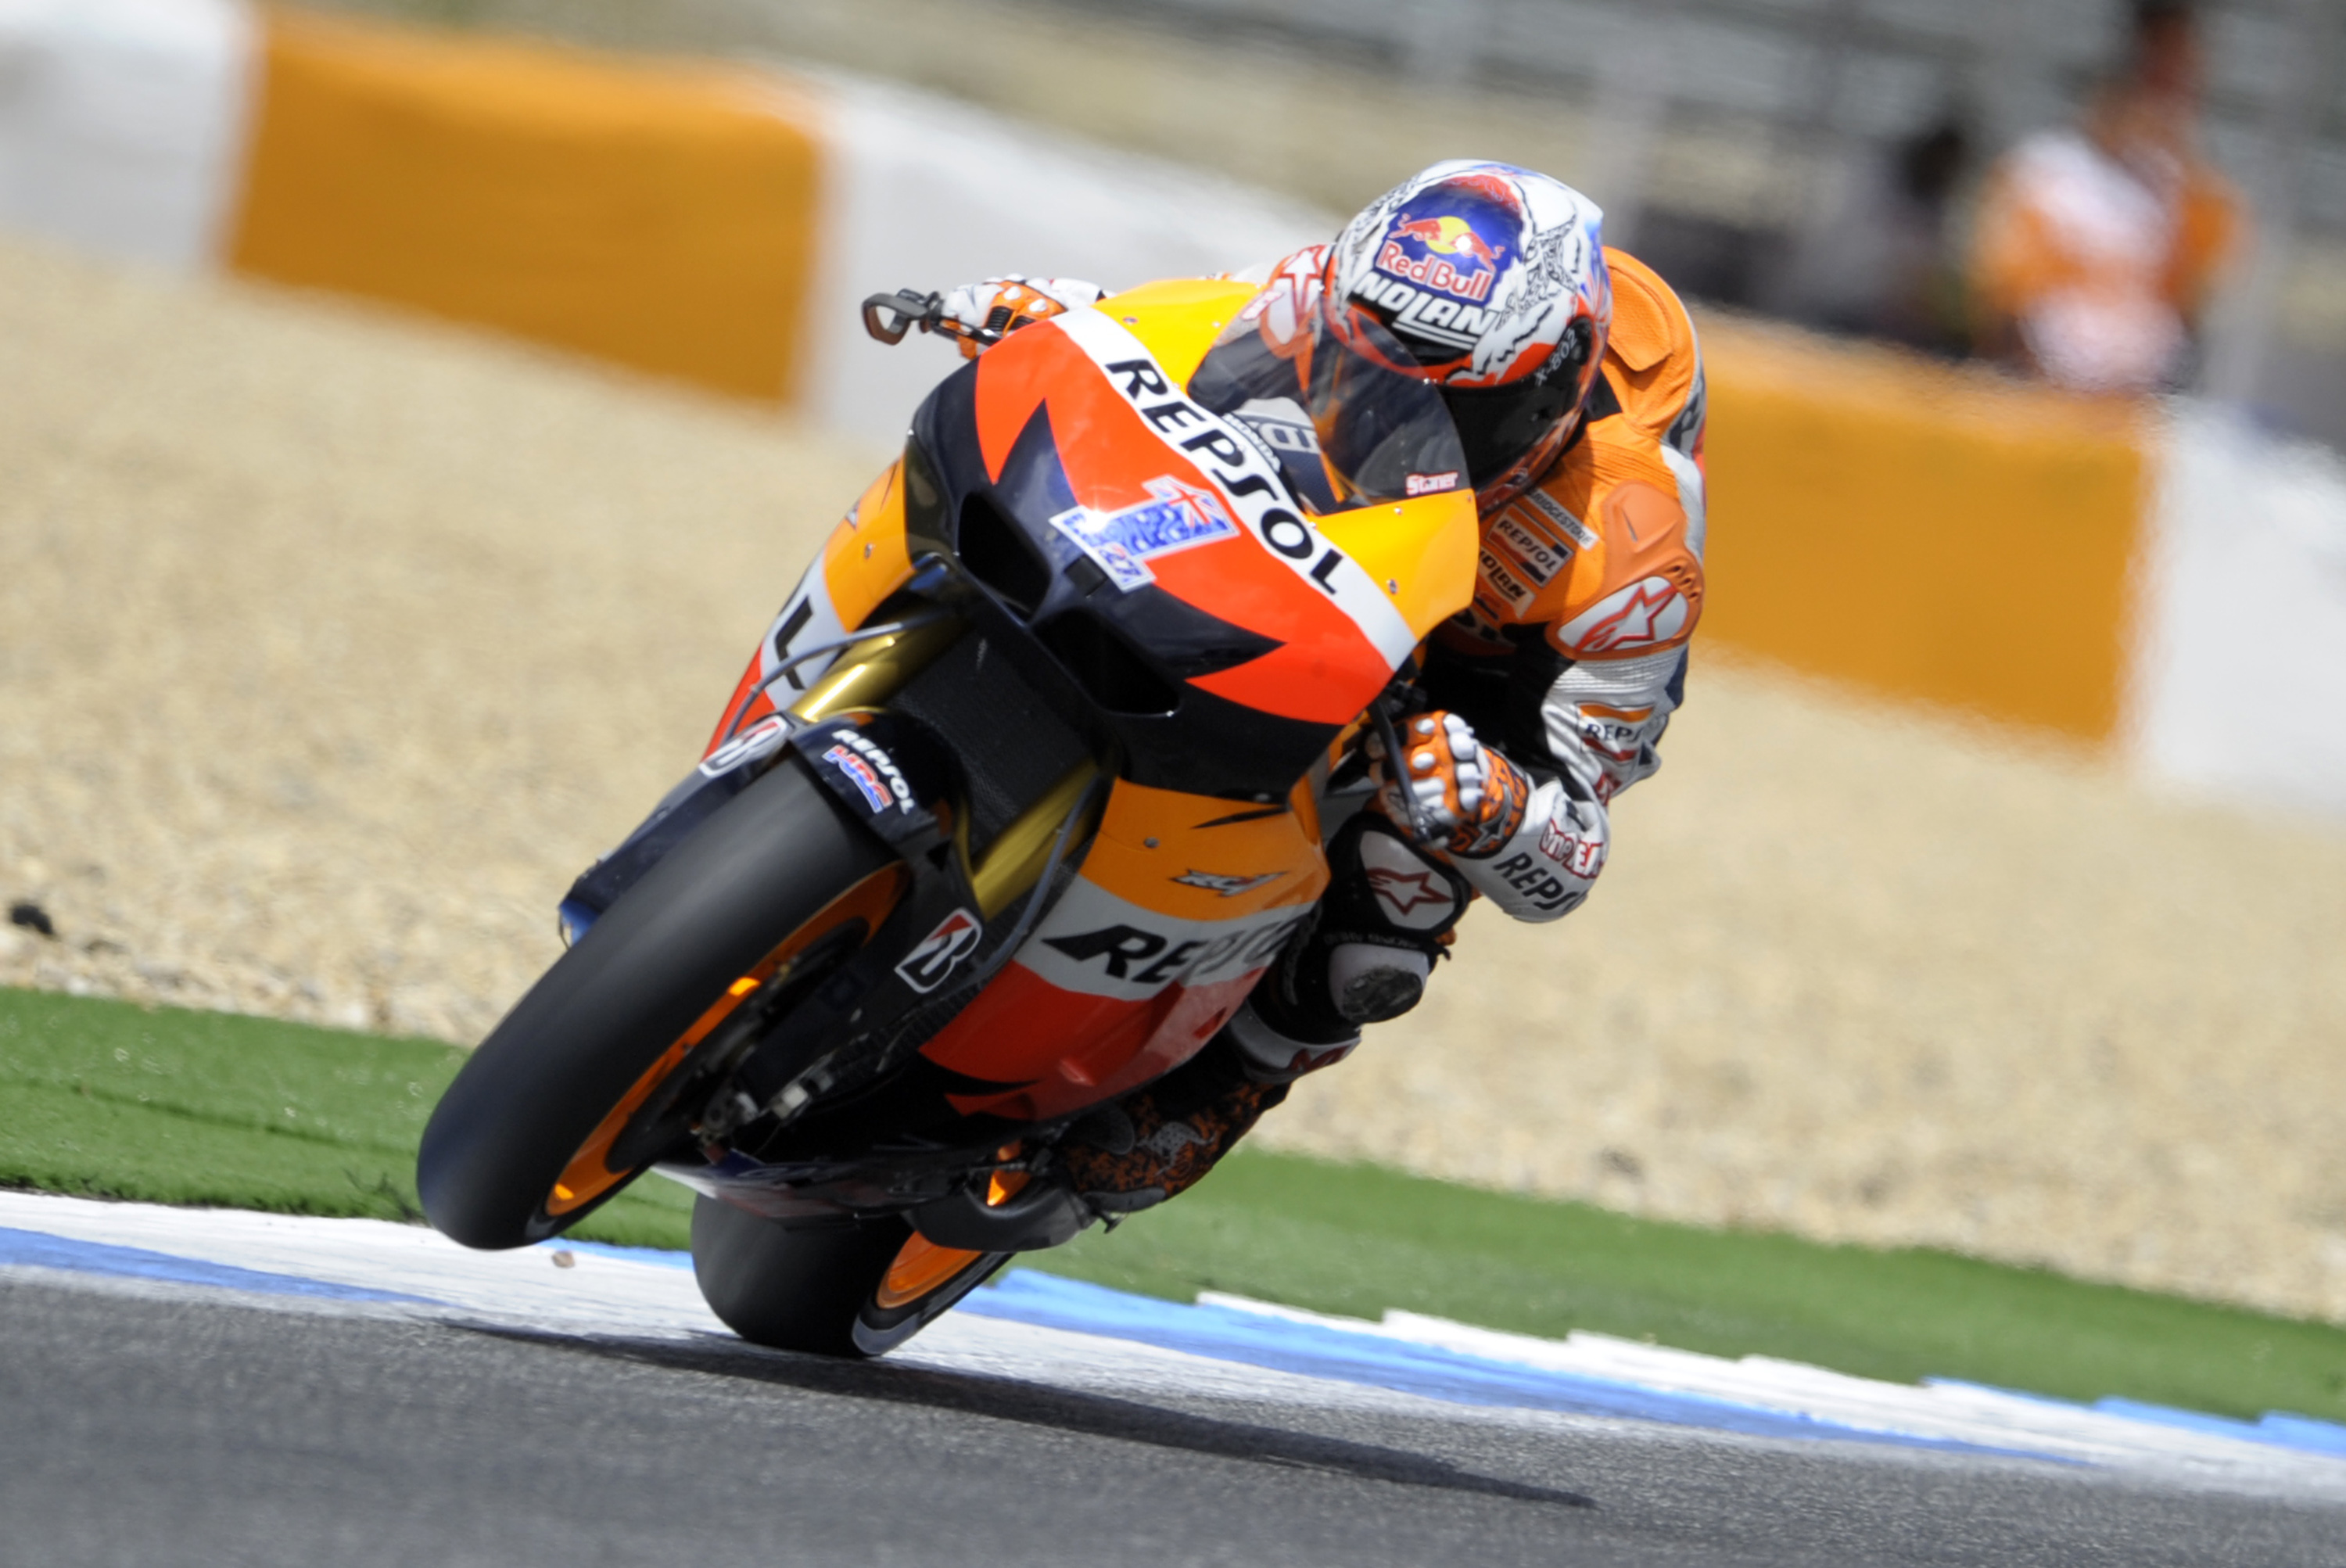 Qualifiche MotoGP Estoril 2012, Stoner pole, incidente De Puniet-Edwards 